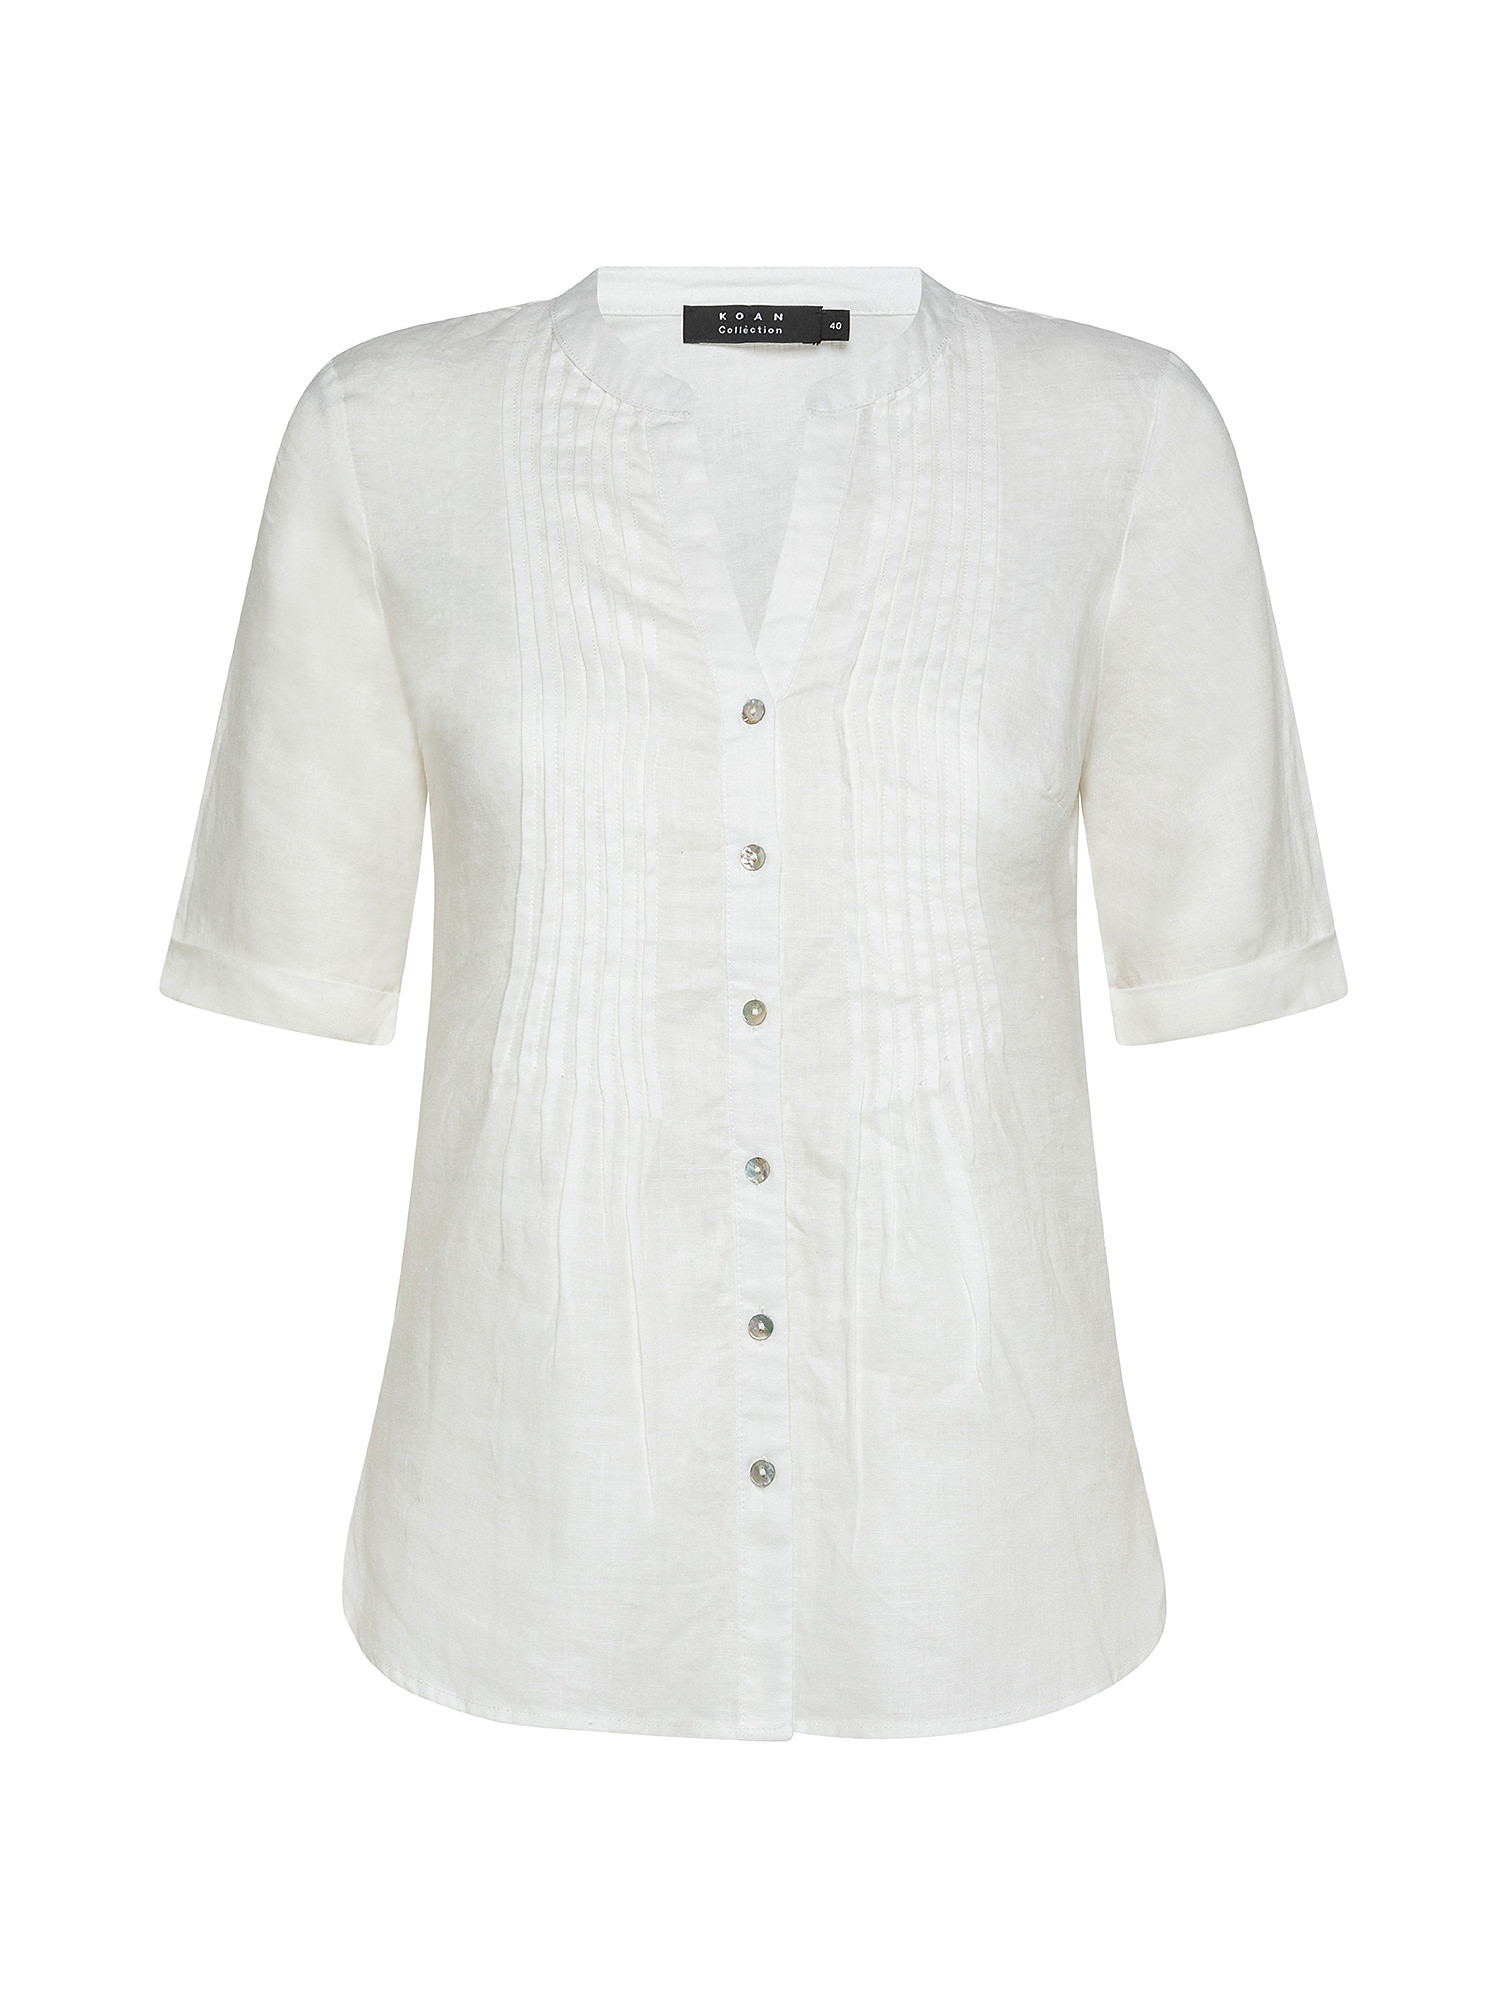 Camicia puro lino con pieghine, Bianco, large image number 0